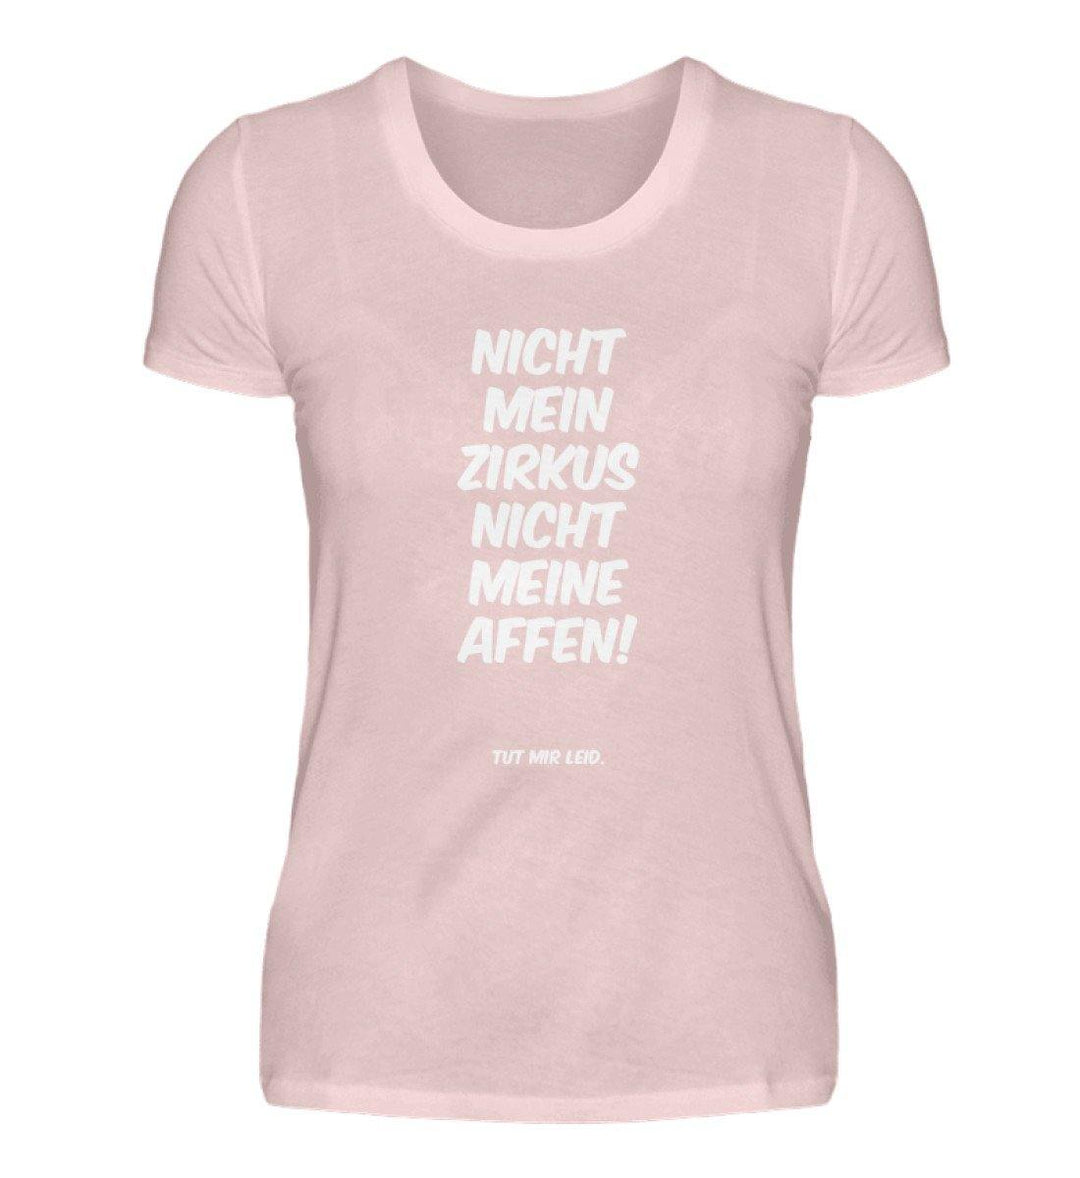 Mein Zirkus Affen - Words on Shirts - PR  - Damen Premiumshirt - Words on Shirts Sag es mit dem Mittelfinger Shirts Hoodies Sweatshirt Taschen Gymsack Spruch Sprüche Statement